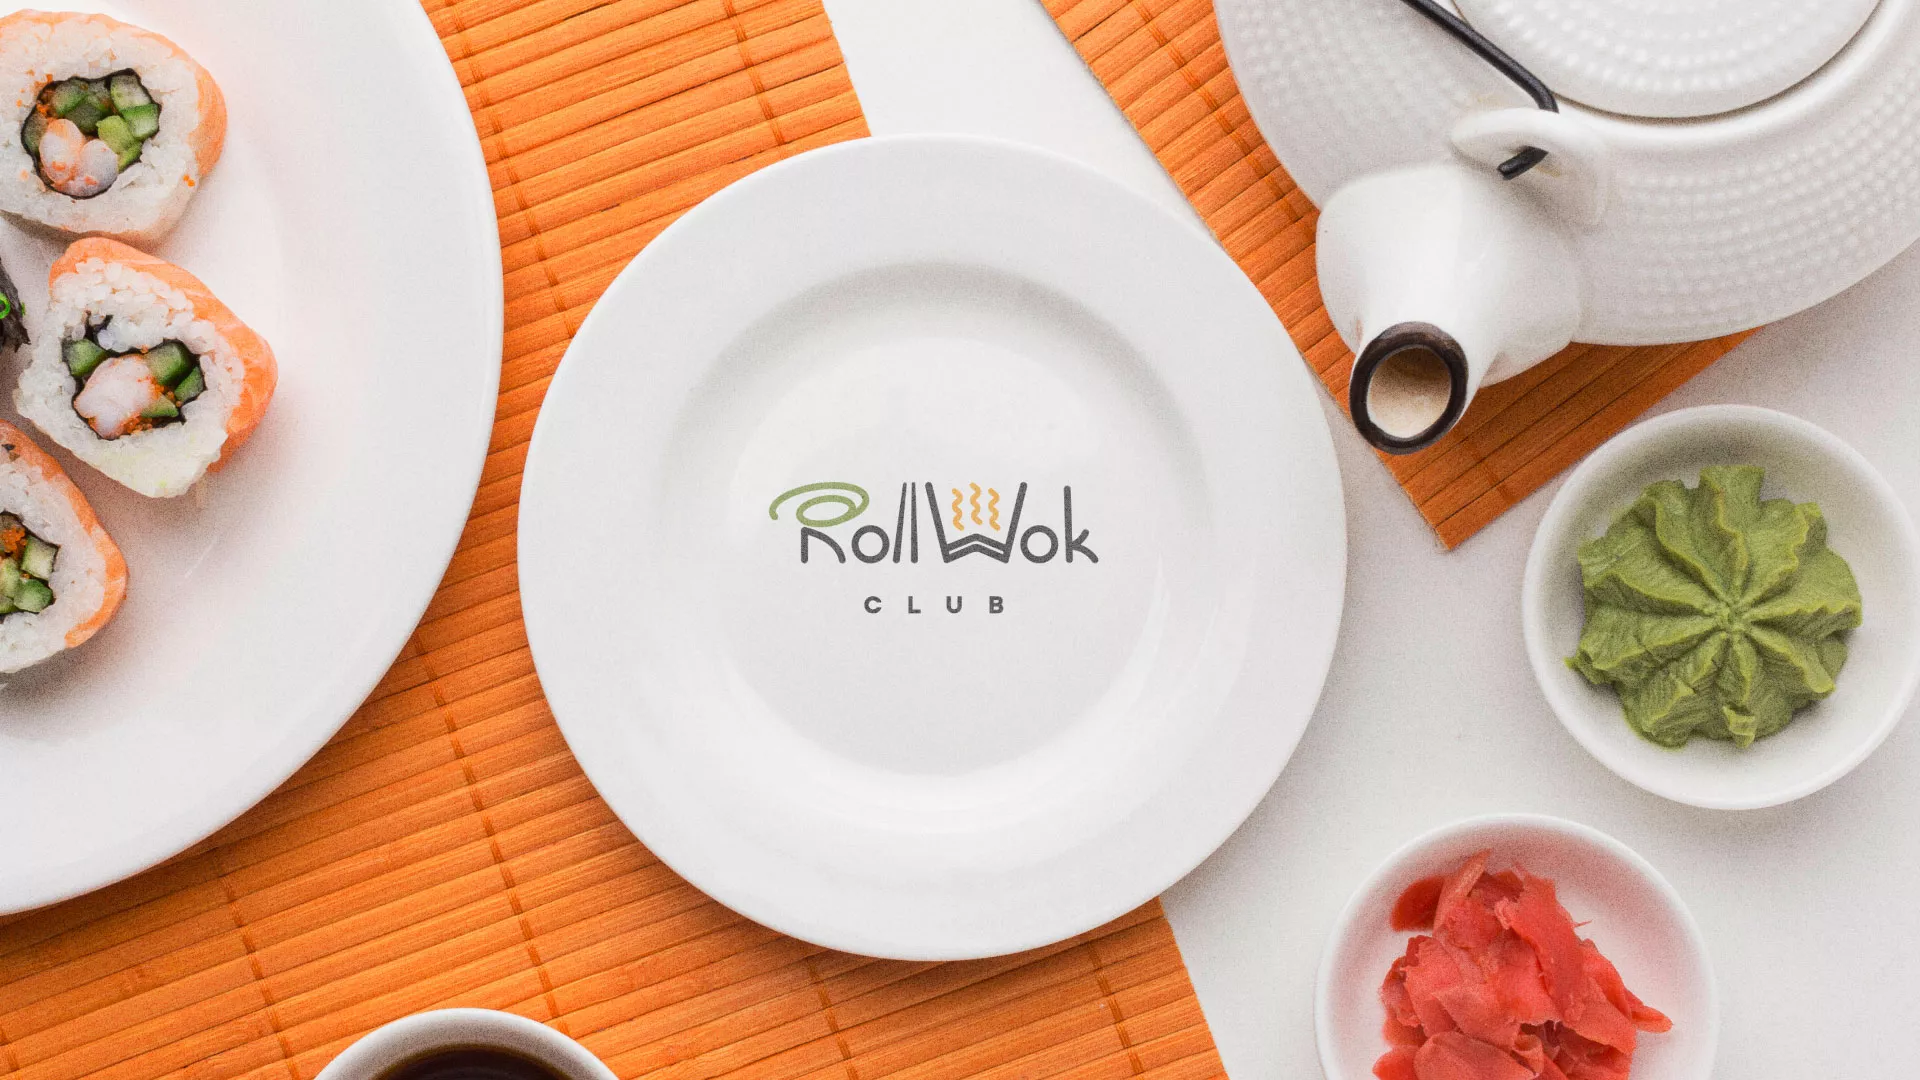 Разработка логотипа и фирменного стиля суши-бара «Roll Wok Club» в Екатеринбурге